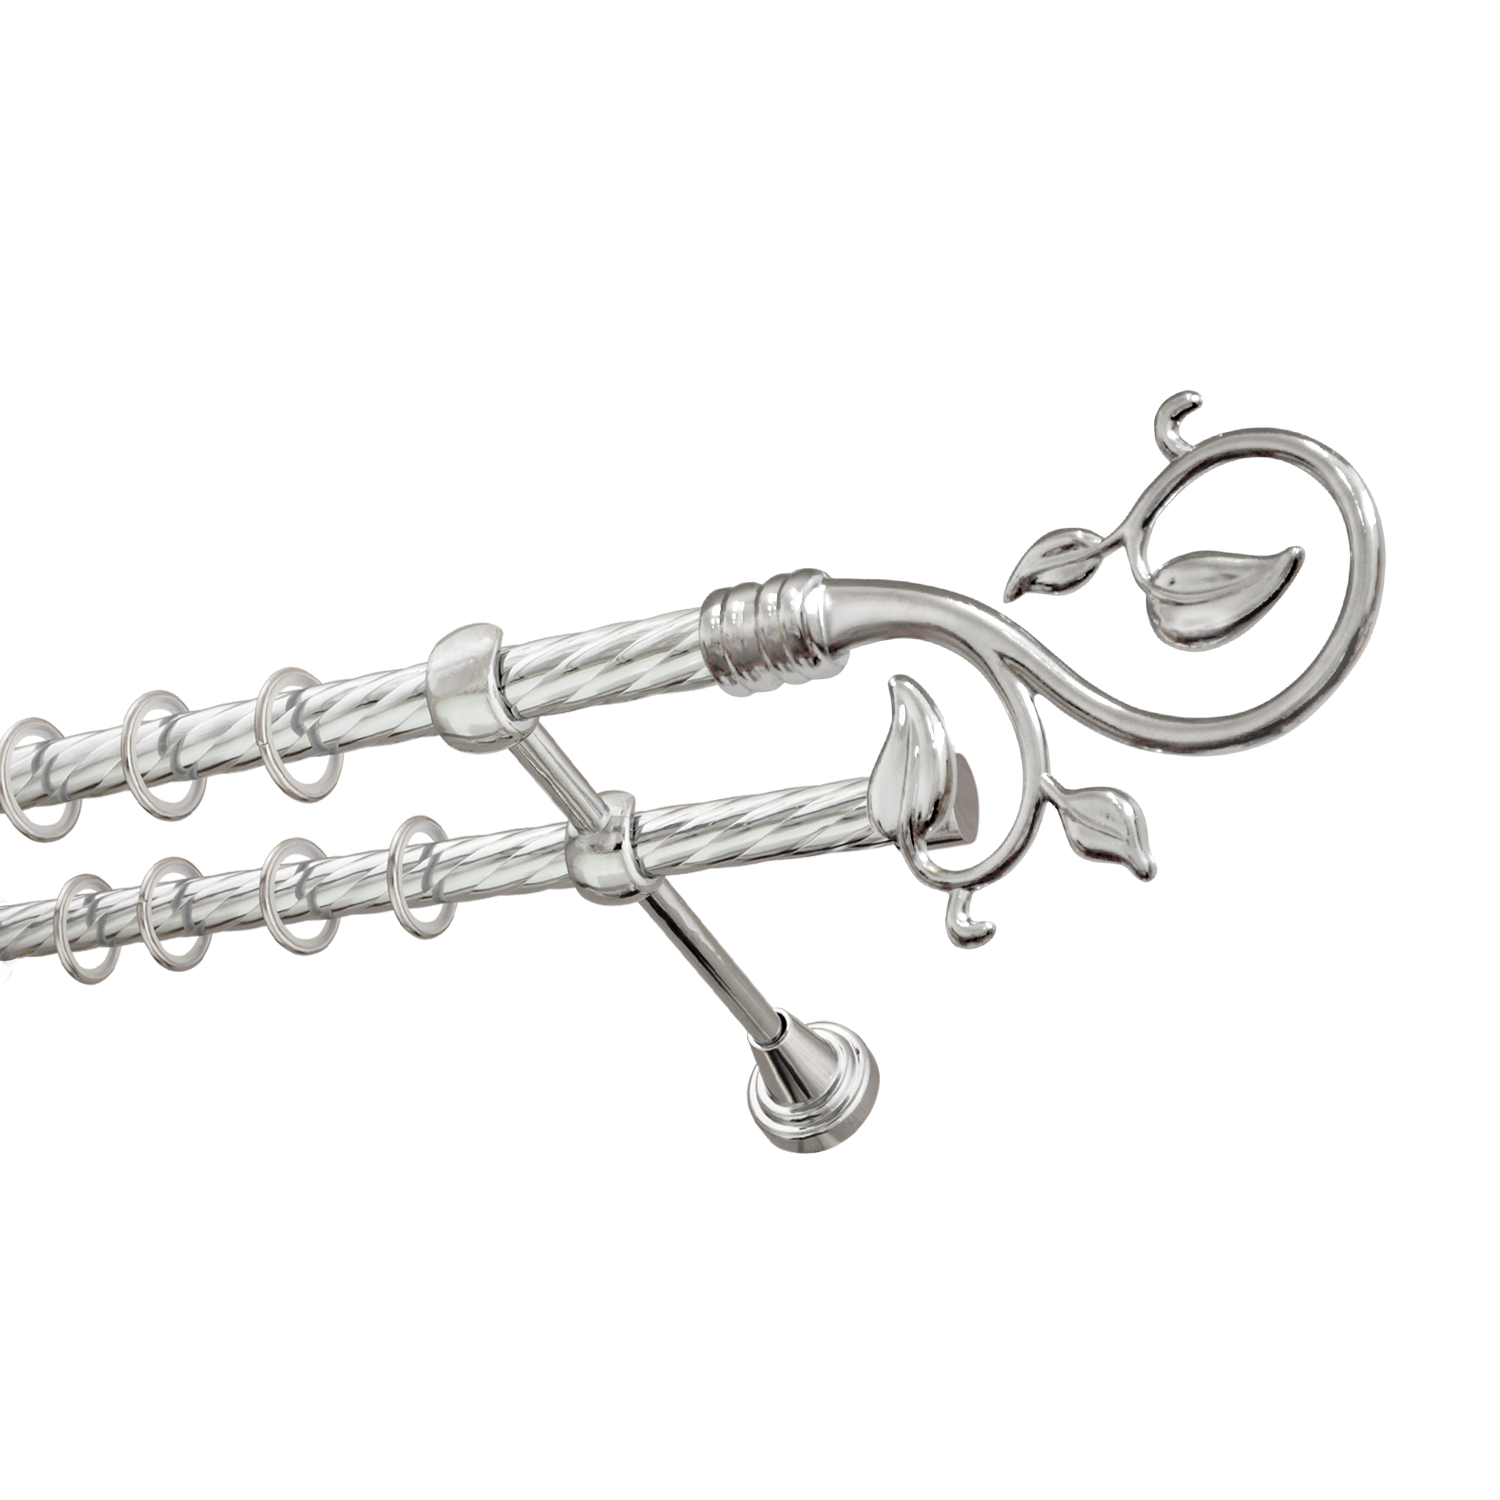 Металлический карниз для штор Амели, двухрядный 16/16 мм, серебро, витая штанга, длина 160 см - фото Wikidecor.ru